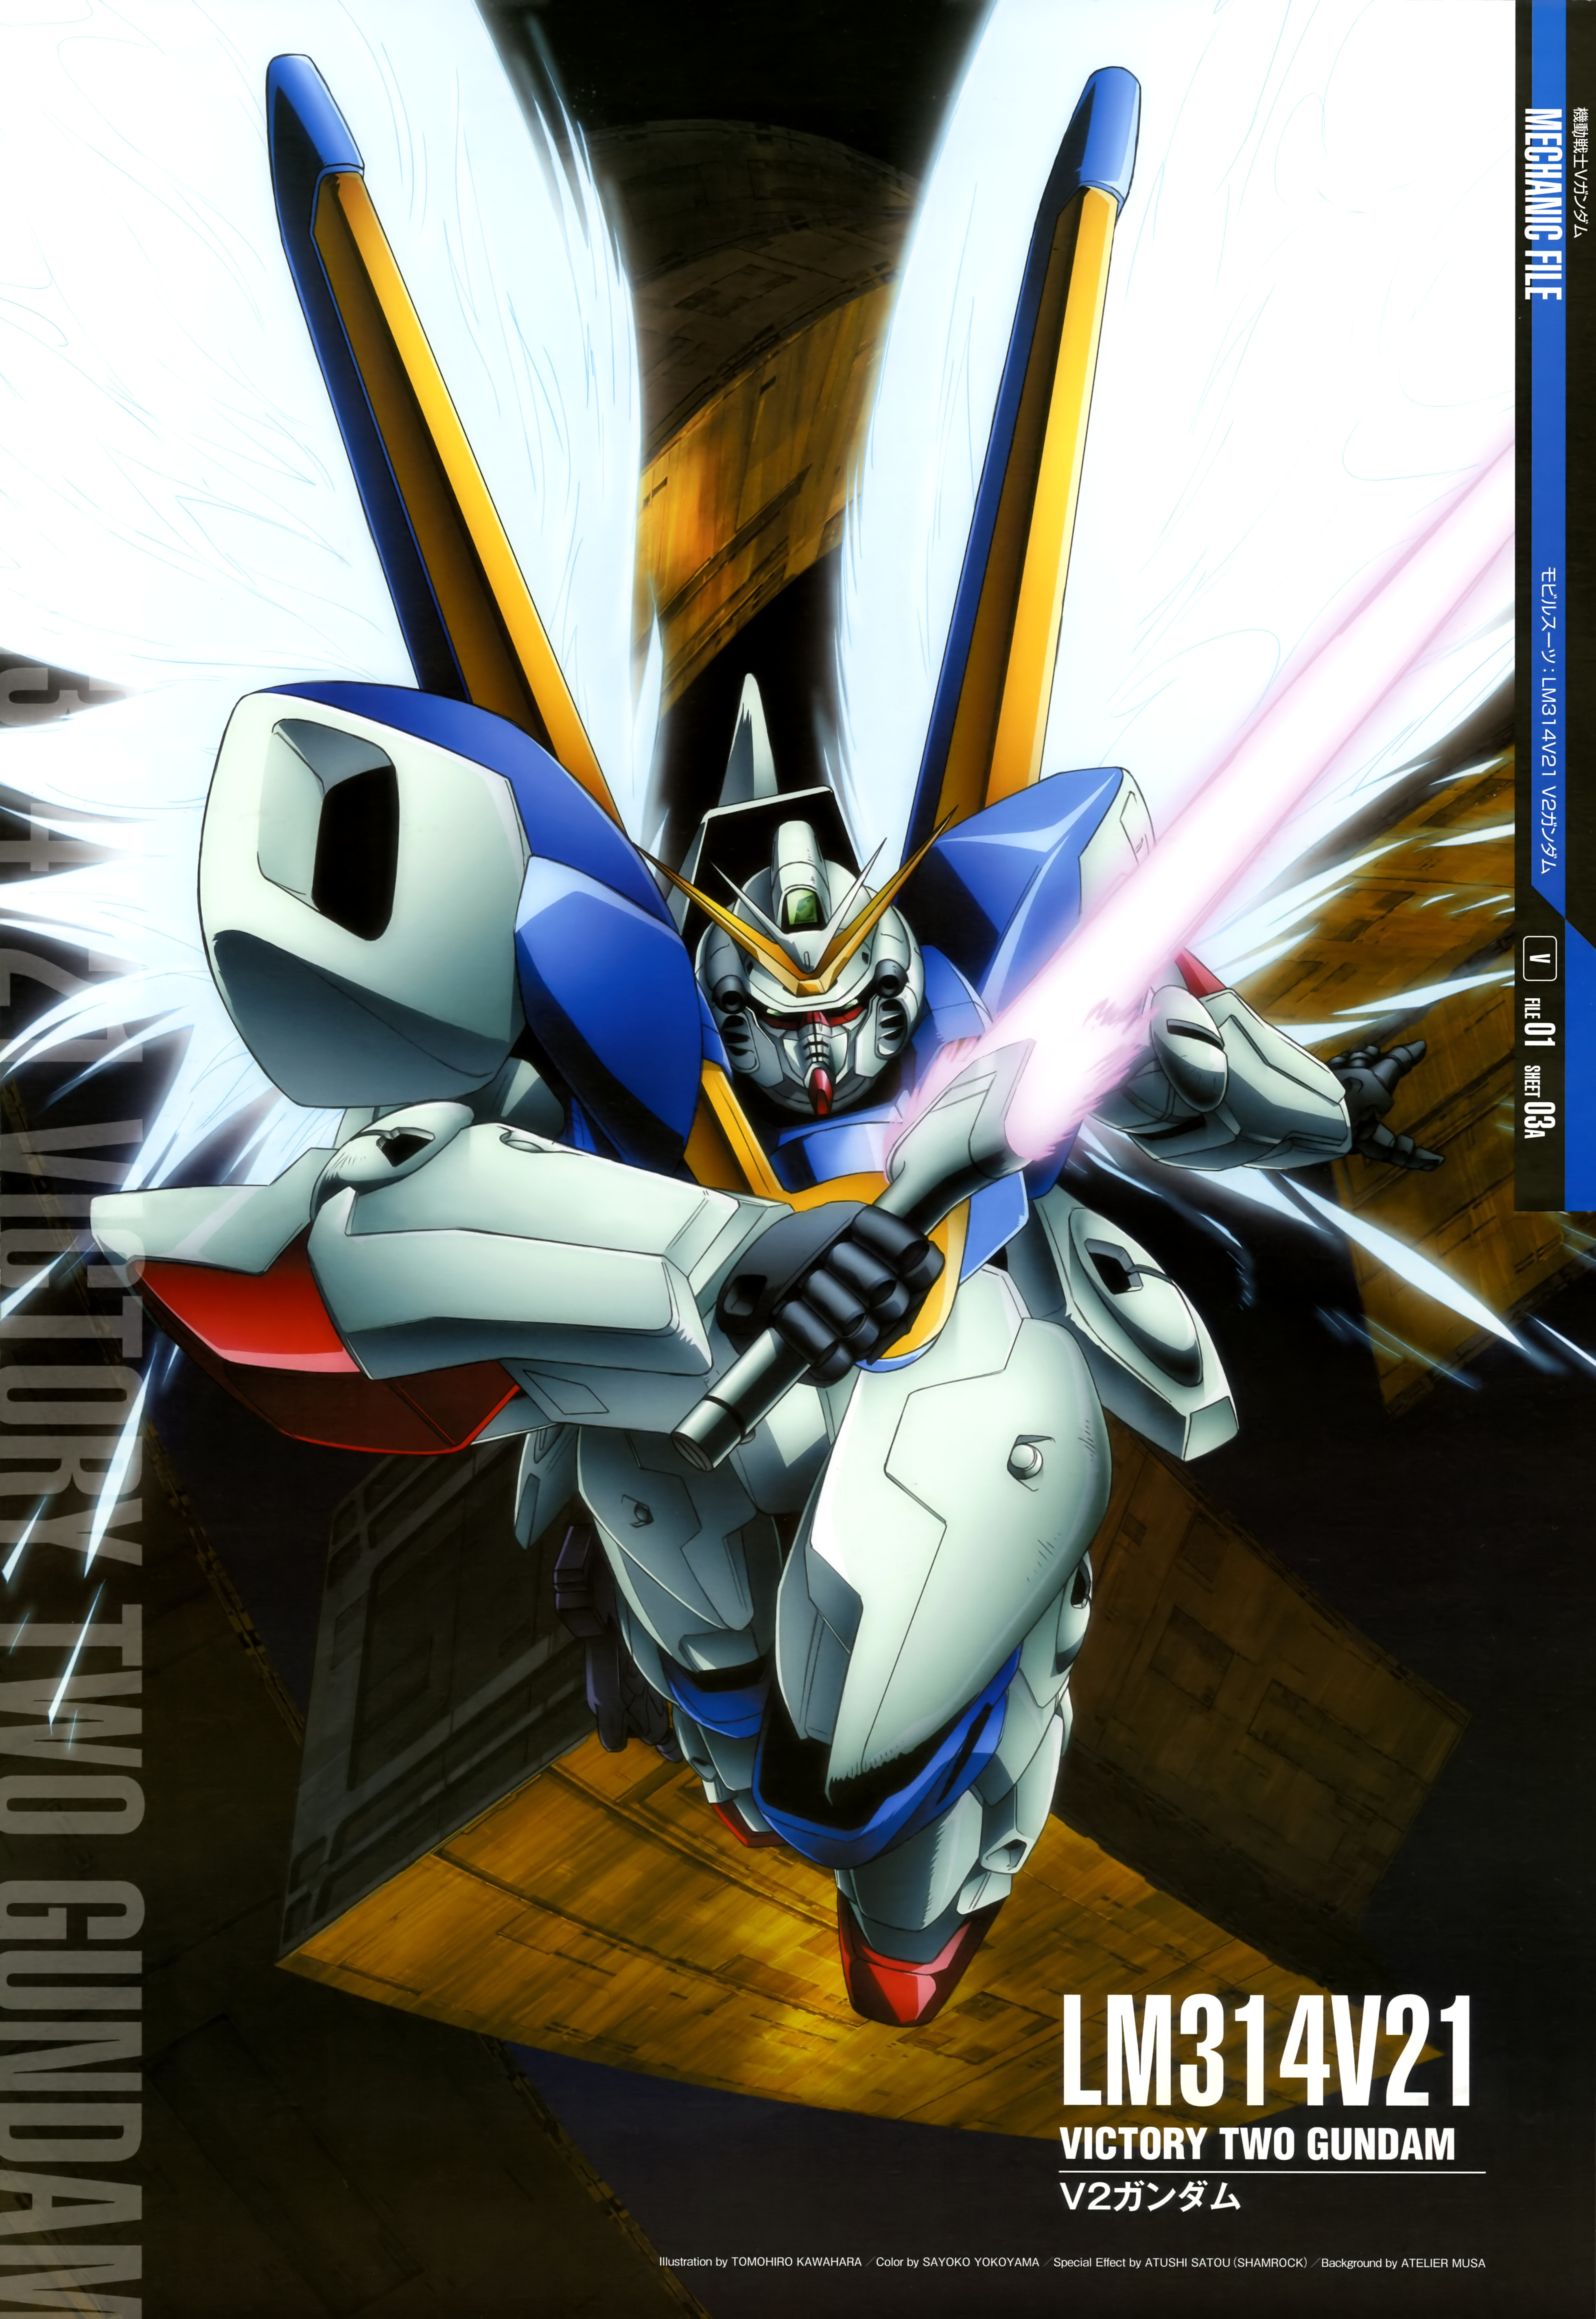 Anime 3922x5697 anime mechs Super Robot Taisen Gundam Mobile Suit V Gundam V2 Gundam artwork digital art fan art